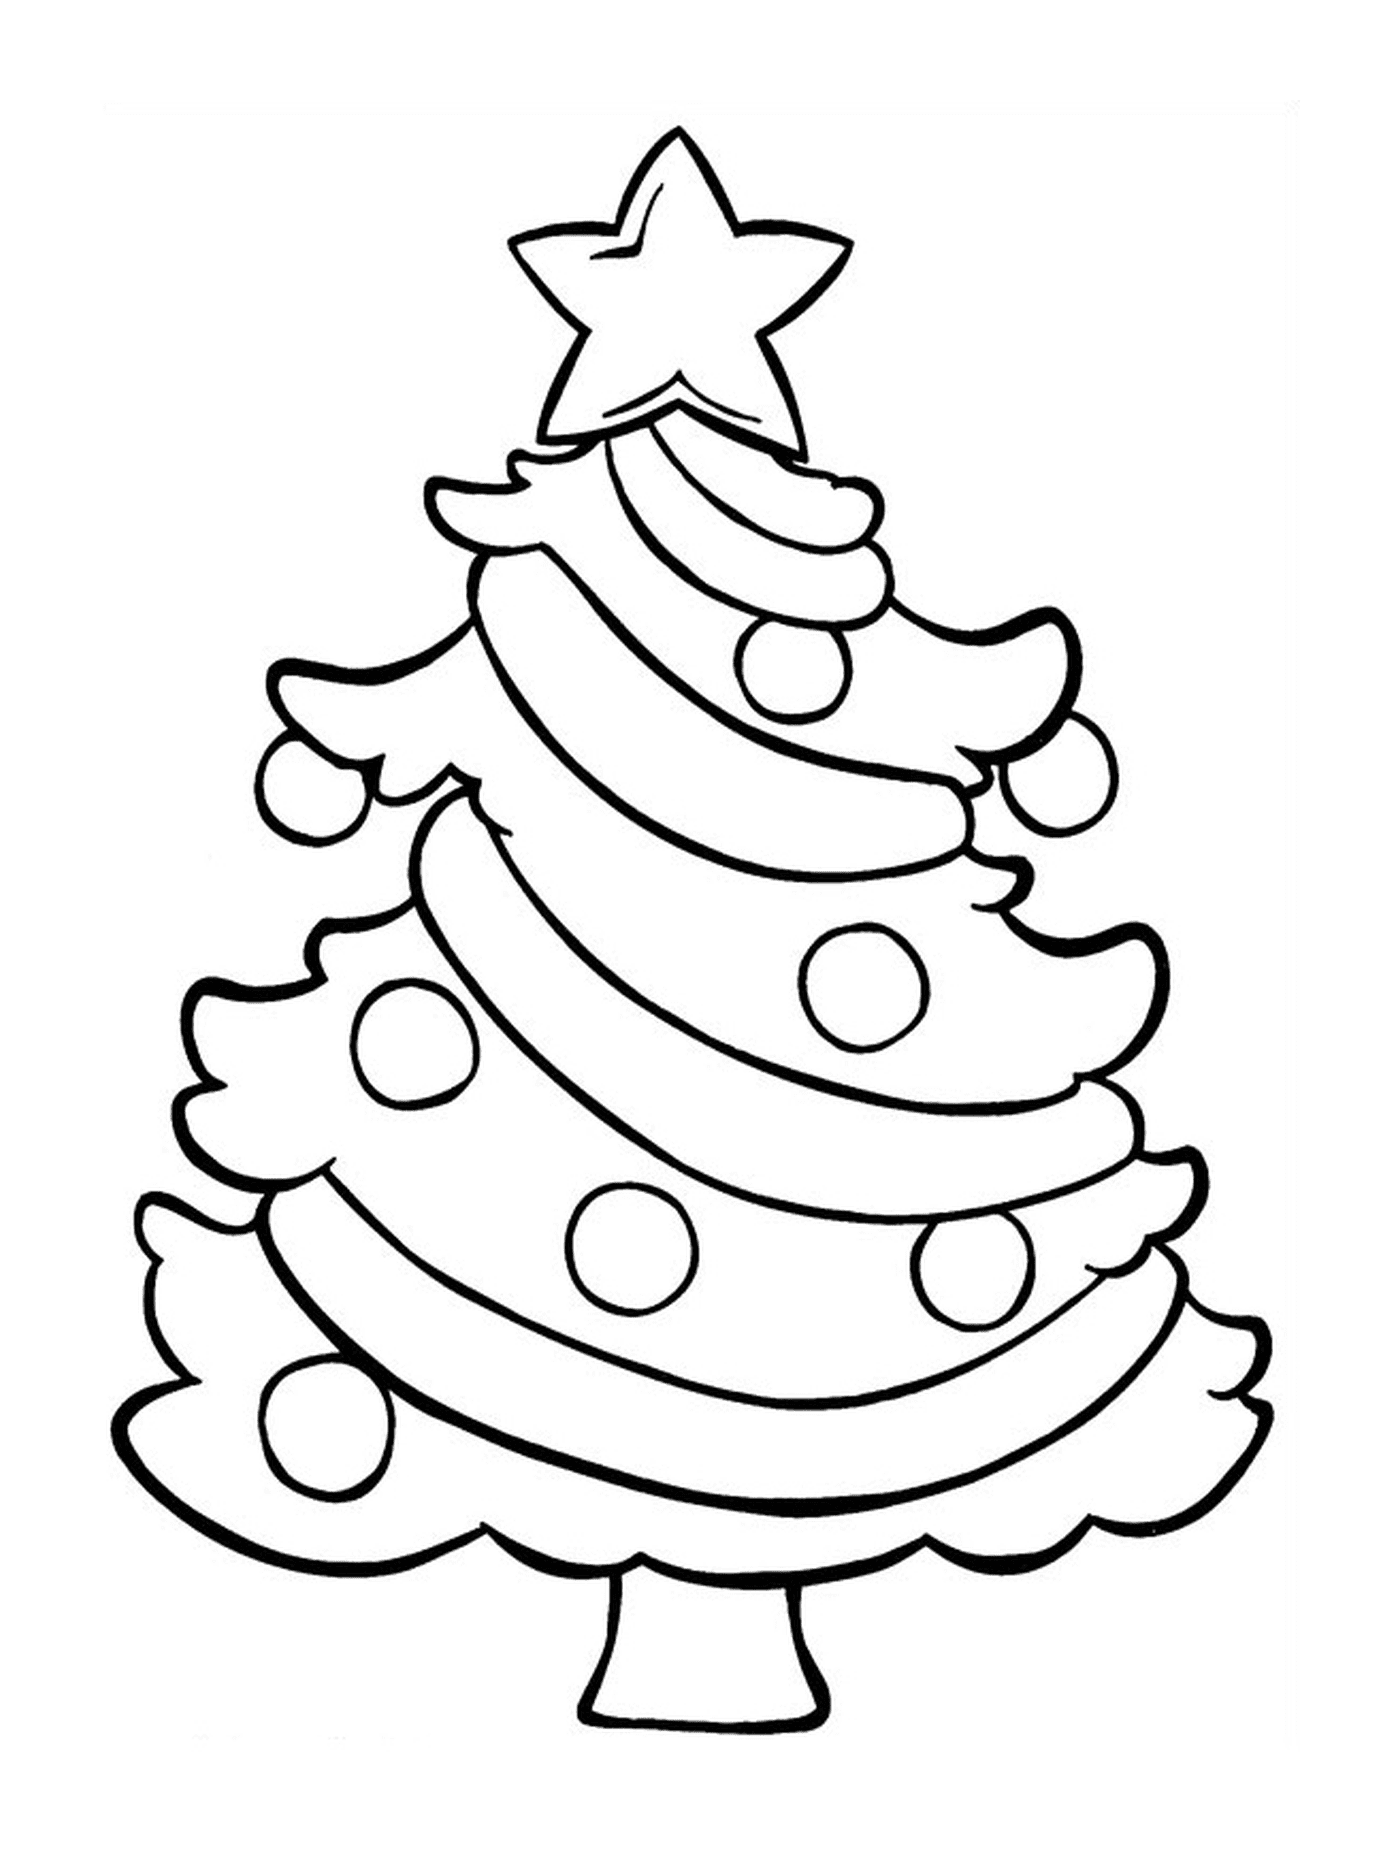  Un árbol de Navidad con una estrella en la cima 